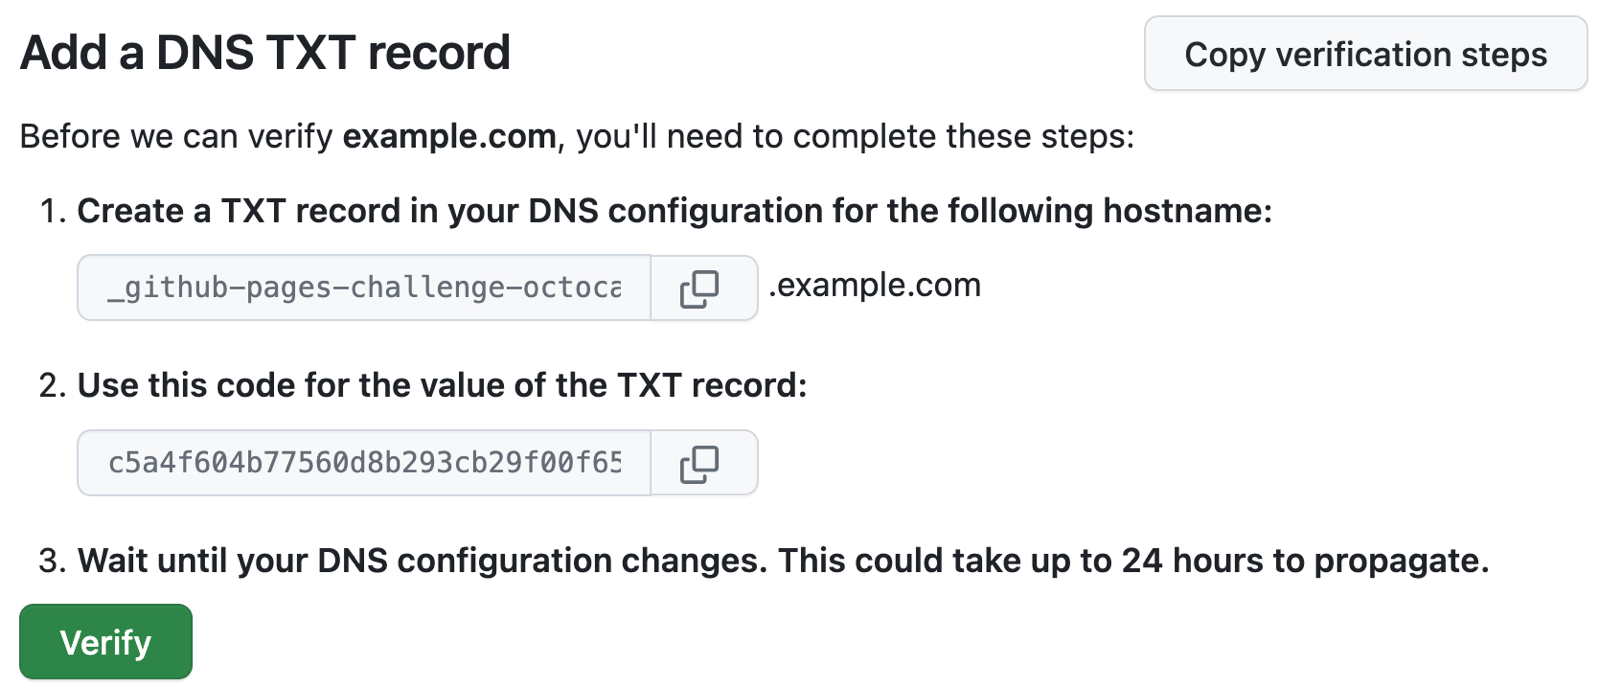 Снимок экрана: инструкции GitHub Pages для добавления записи TXT в конфигурацию DNS example.com.